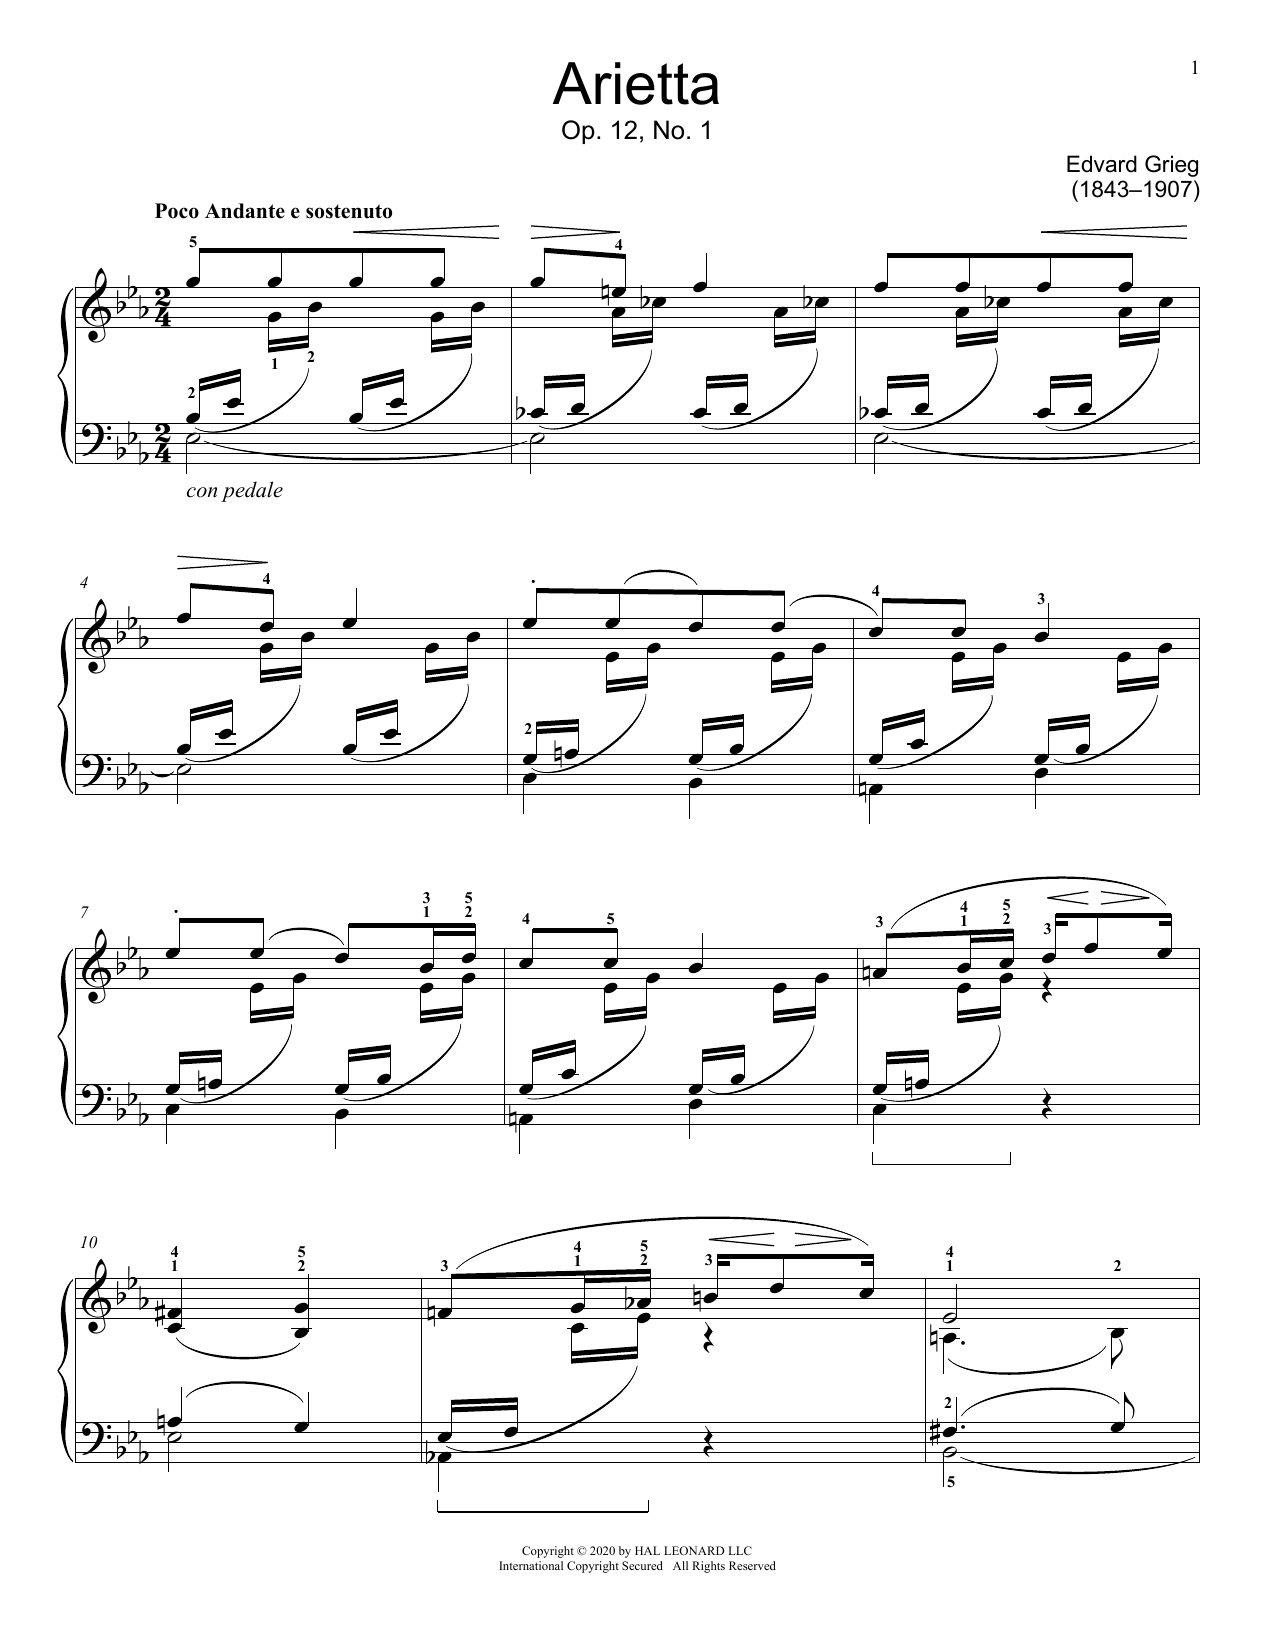 Download Edvard Grieg Arietta, Op. 12, No. 1 Sheet Music